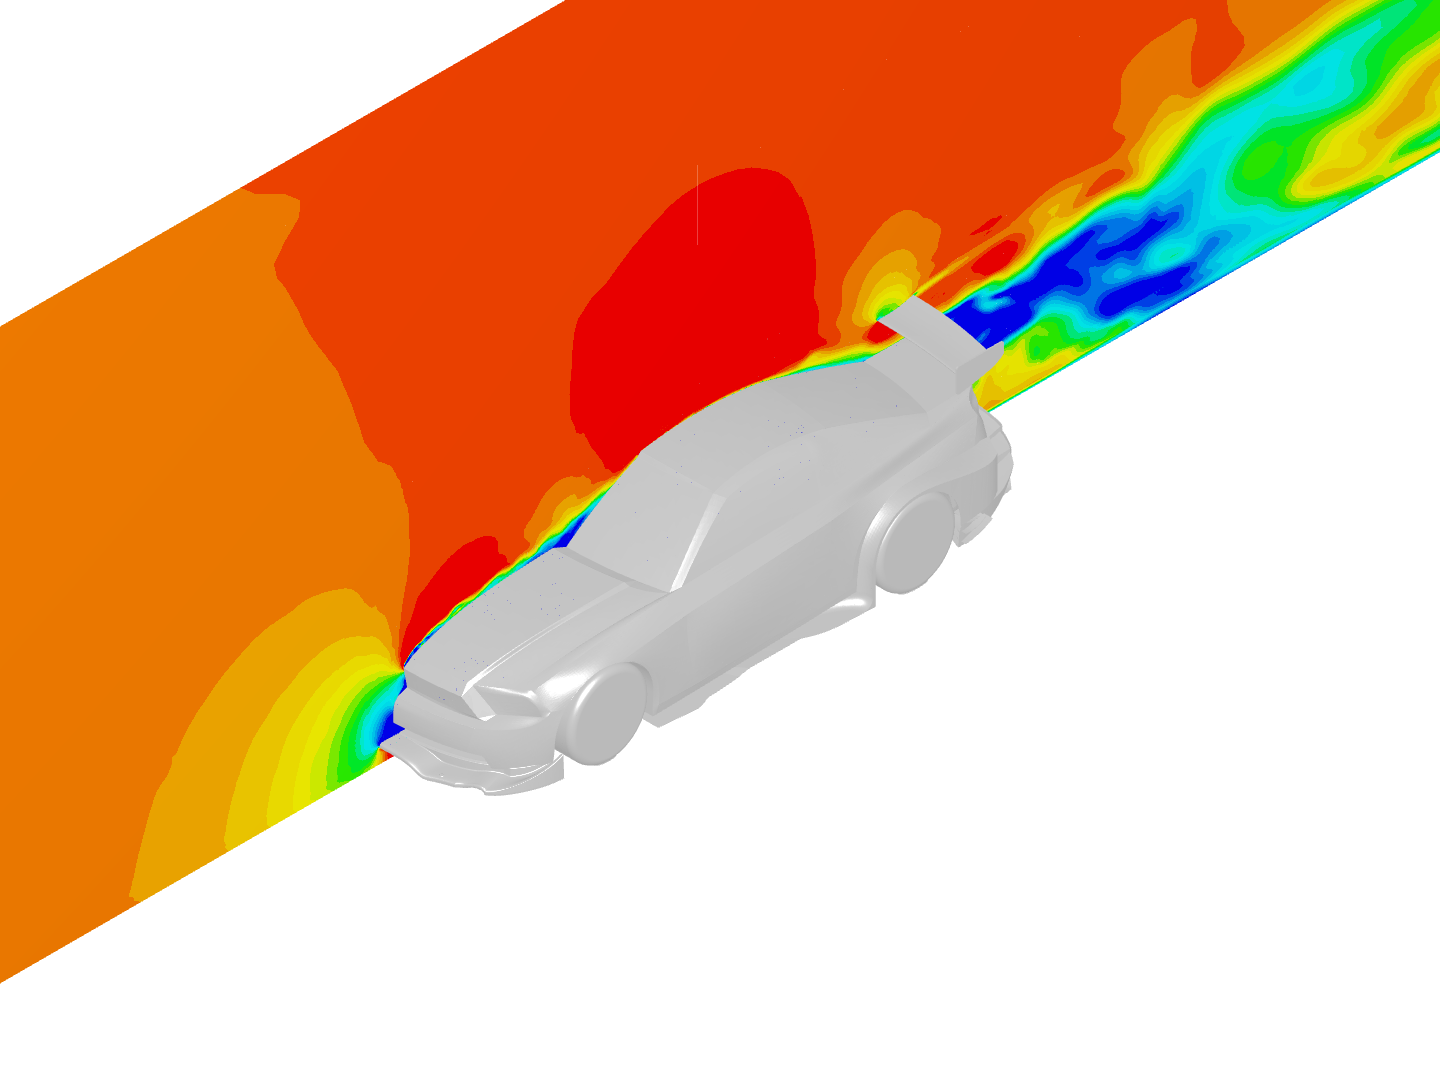 Mustang External Aerodynamics Analysis image